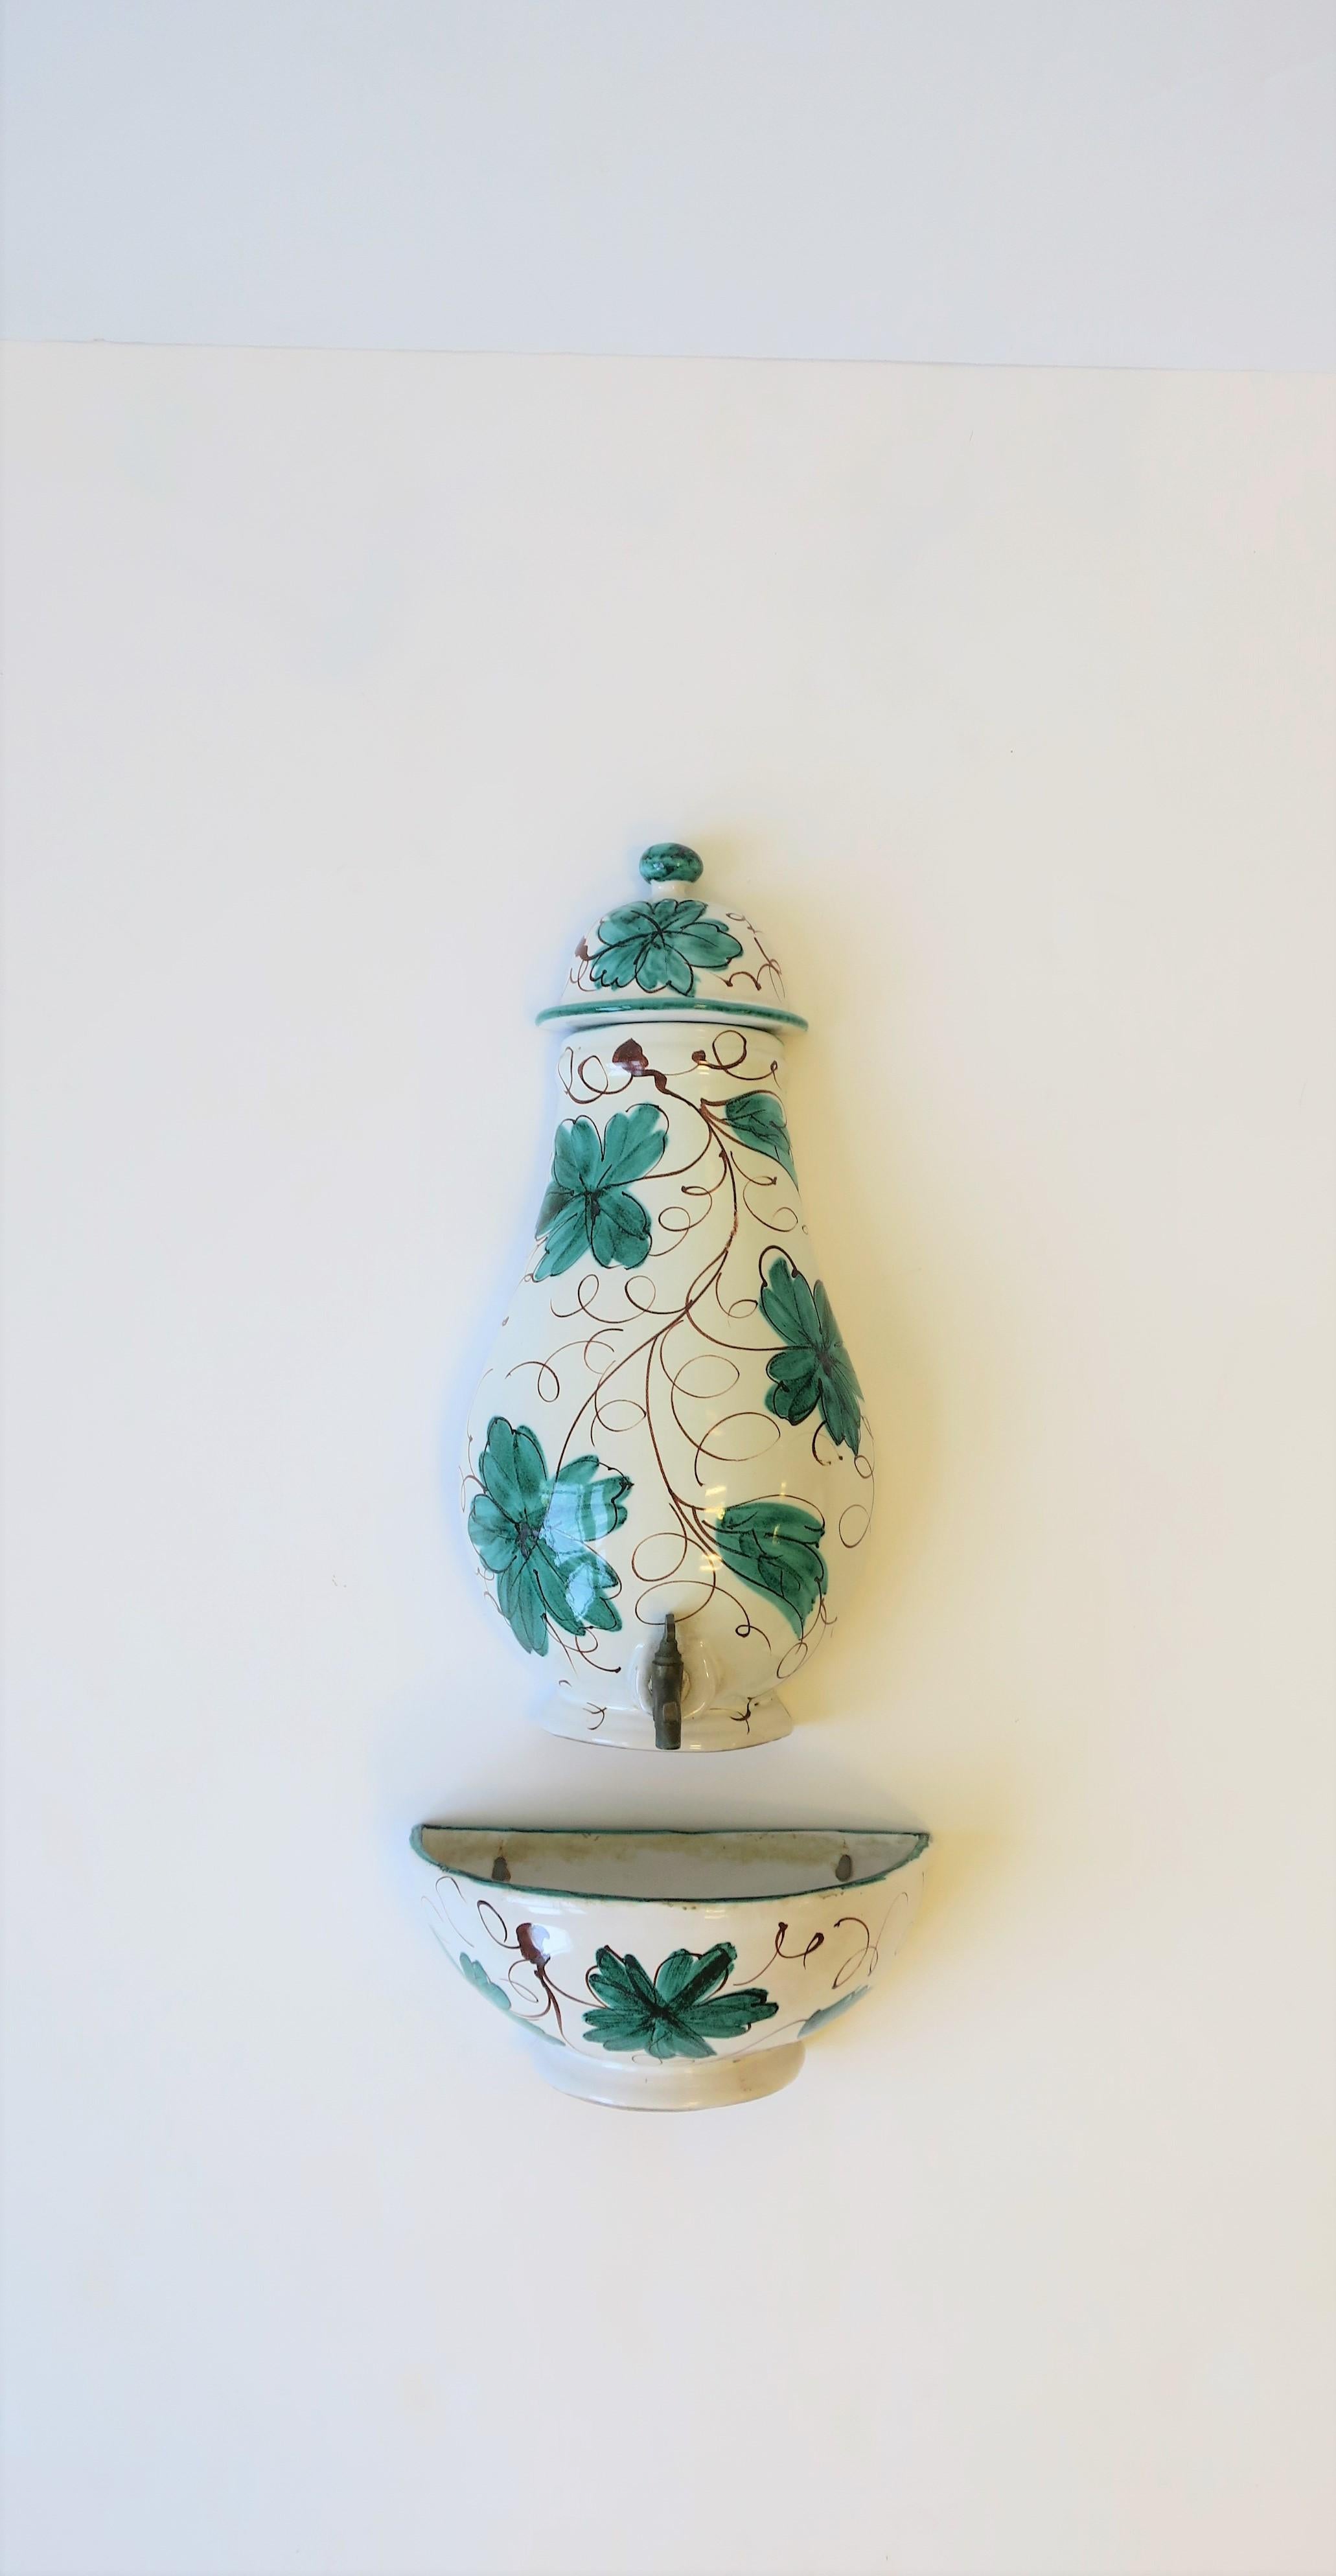 Belle fontaine murale italienne en céramique de terre cuite et laiton, peinte à la main en blanc et vert, vers le 20e siècle, Italie. La pièce peut contenir et distribuer de l'eau ou une autre boisson telle que du thé, de la limonade, etc. La